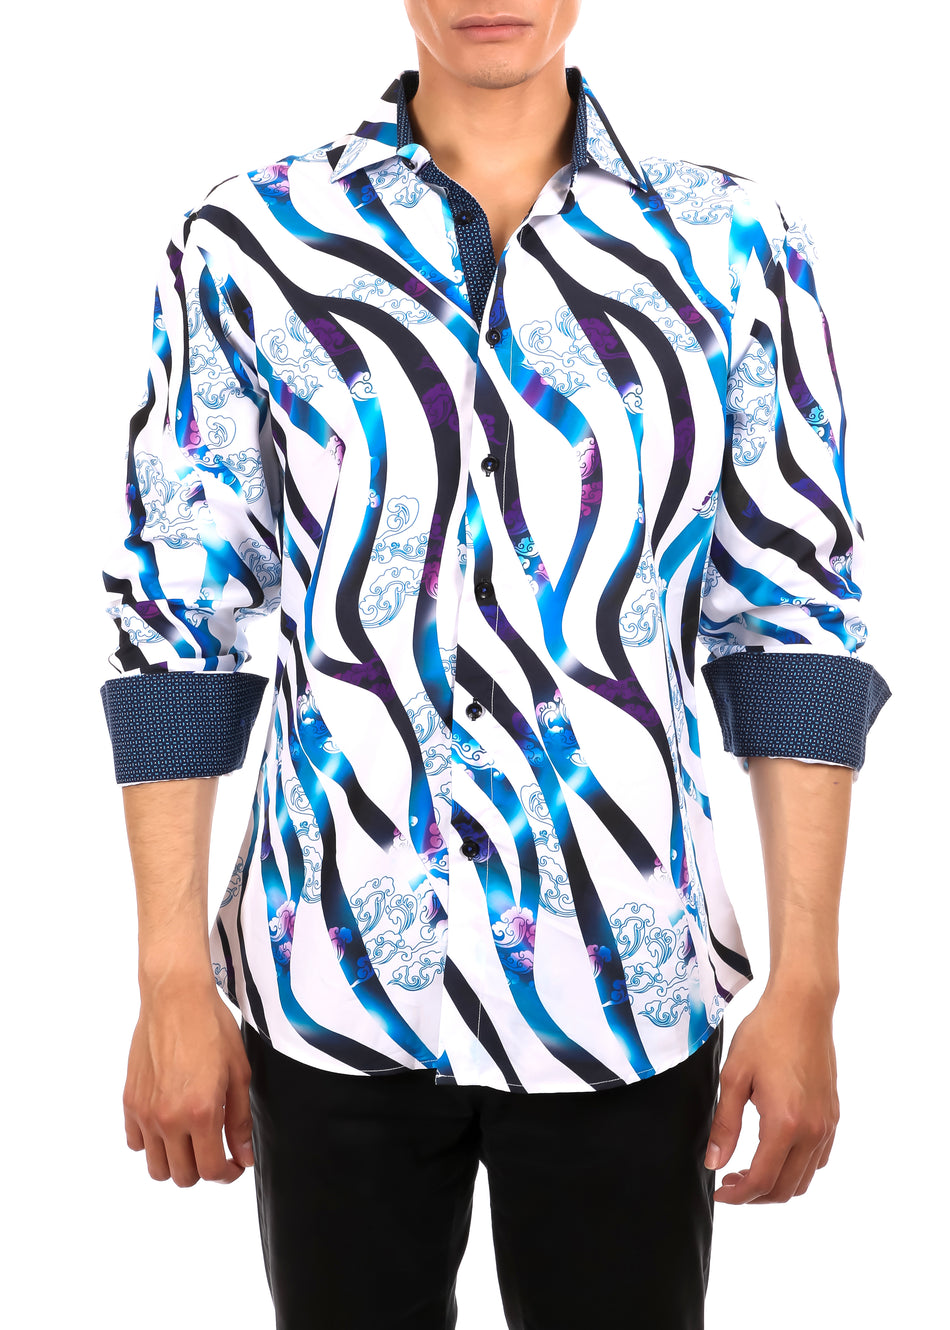 Men's Neon Zebra Button Up Long Sleeve Dress Shirt